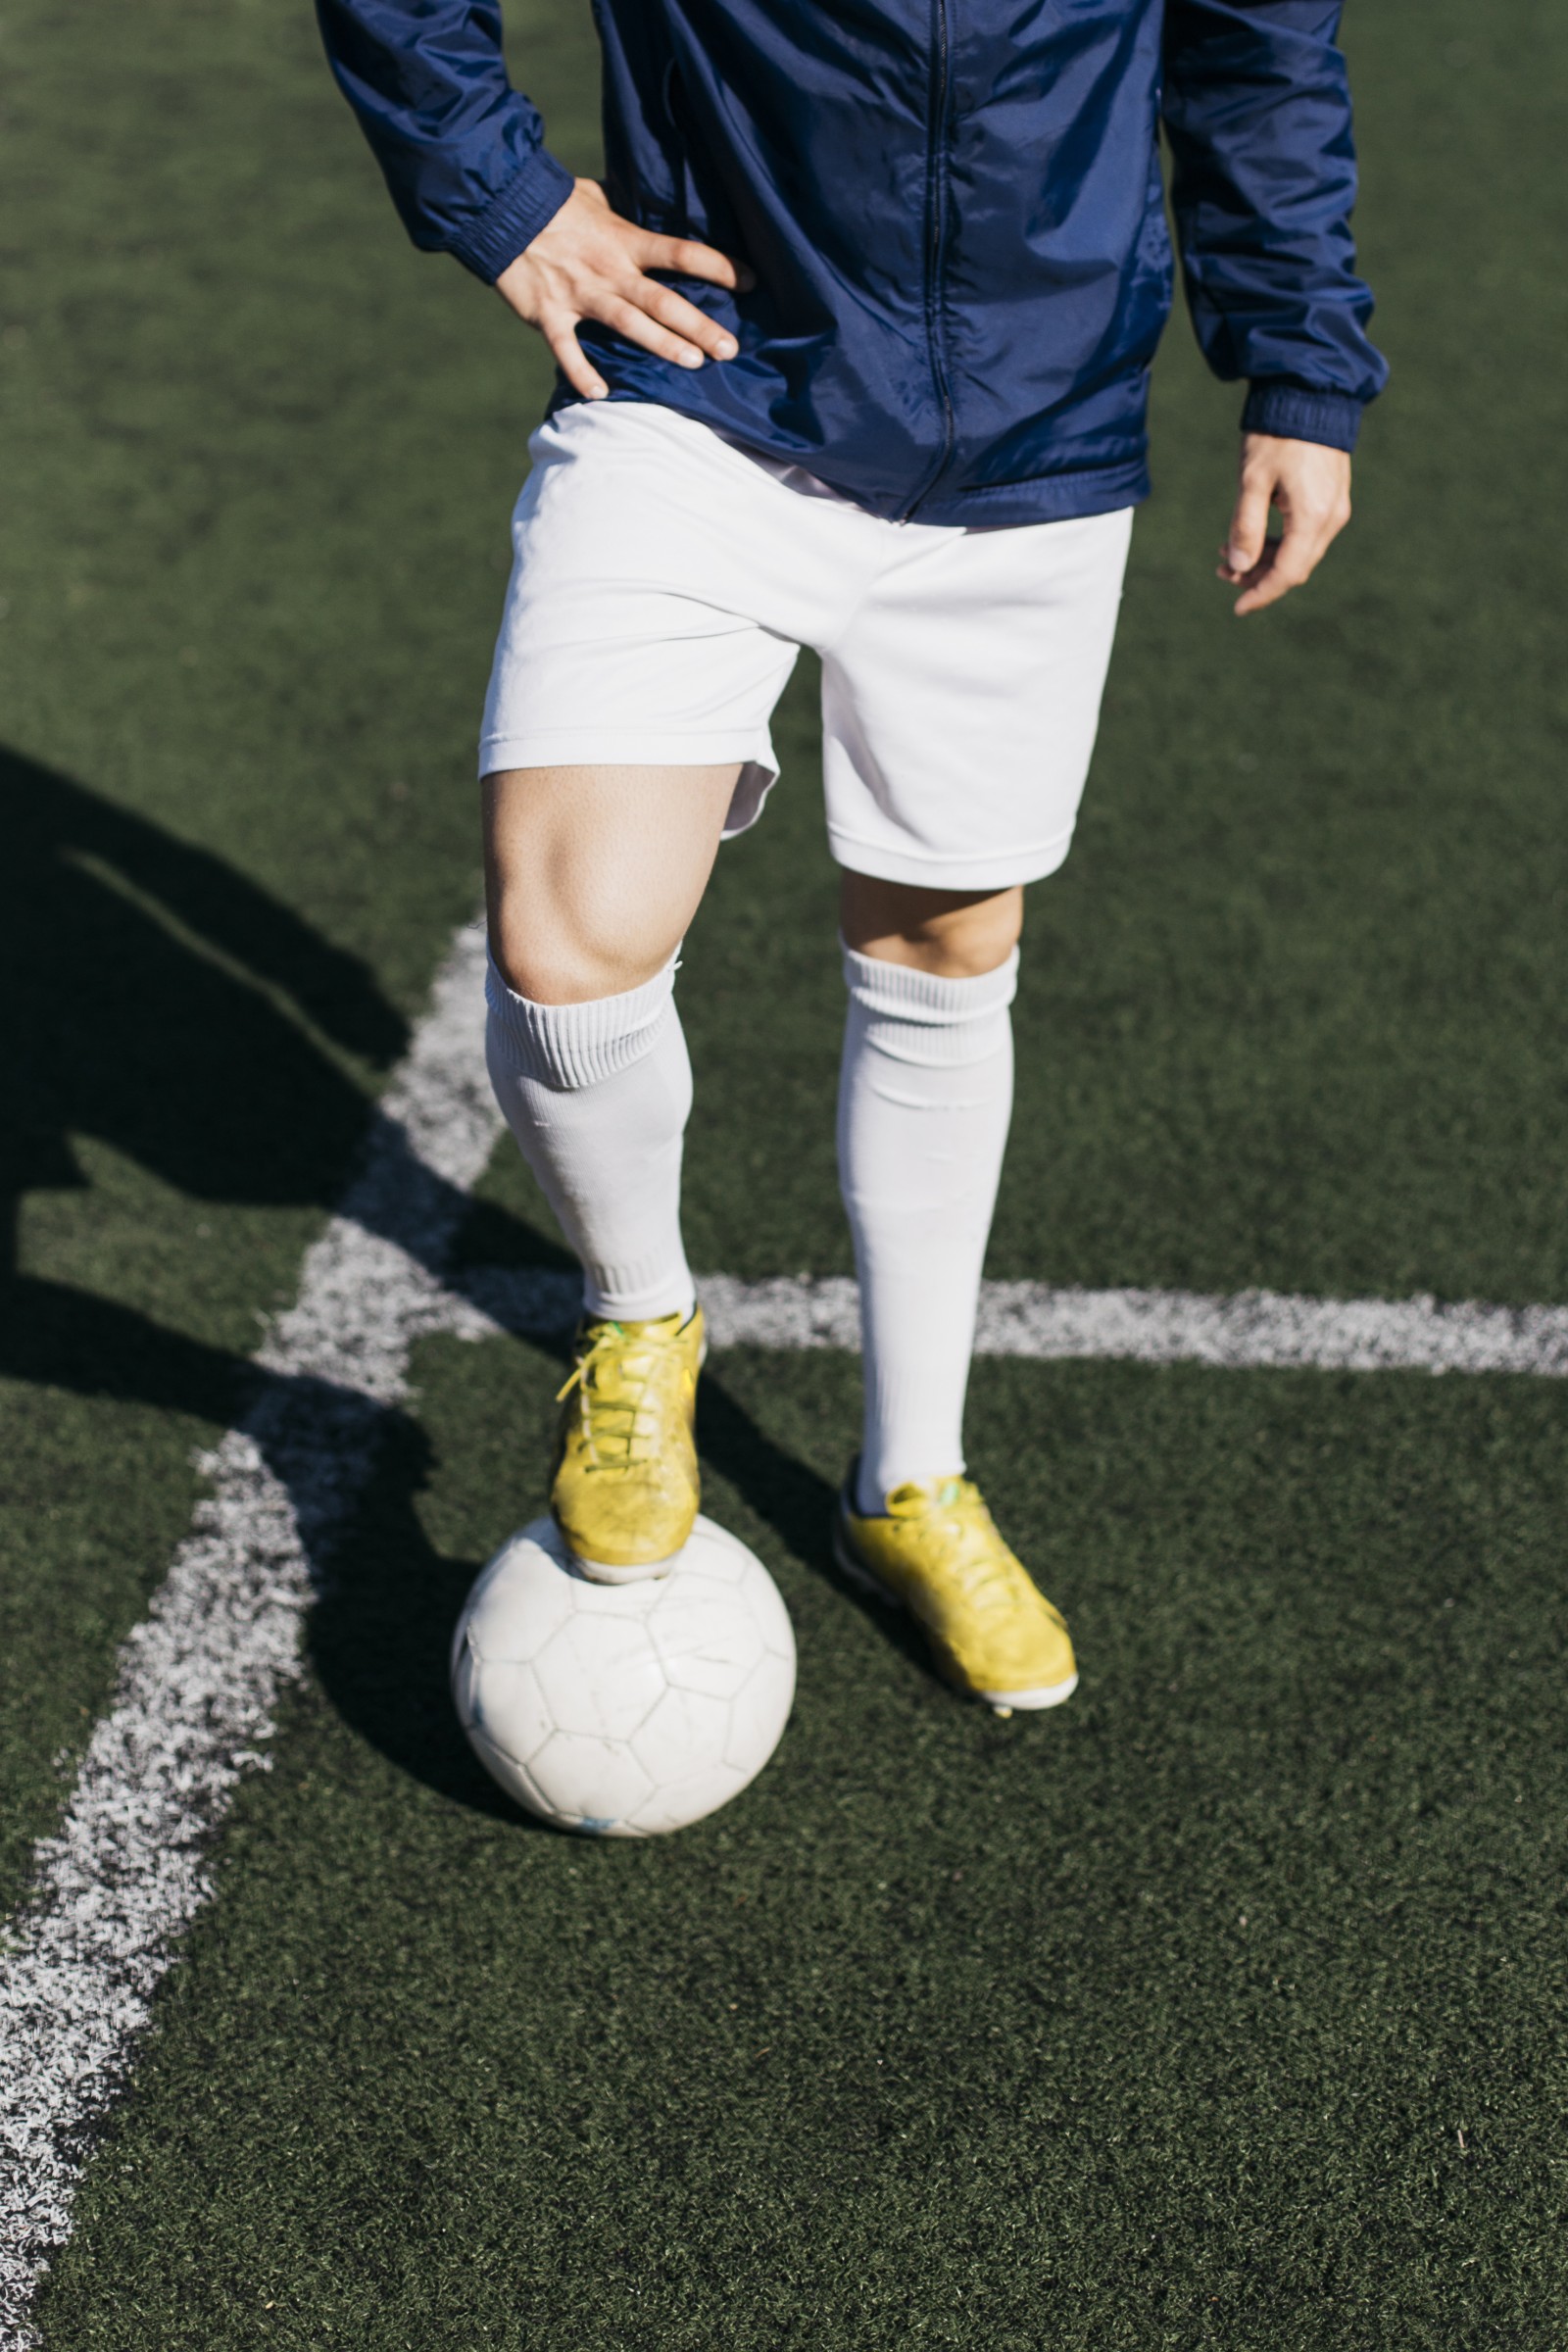 Savjeti za odabir kvalitetne obuće za nogomet